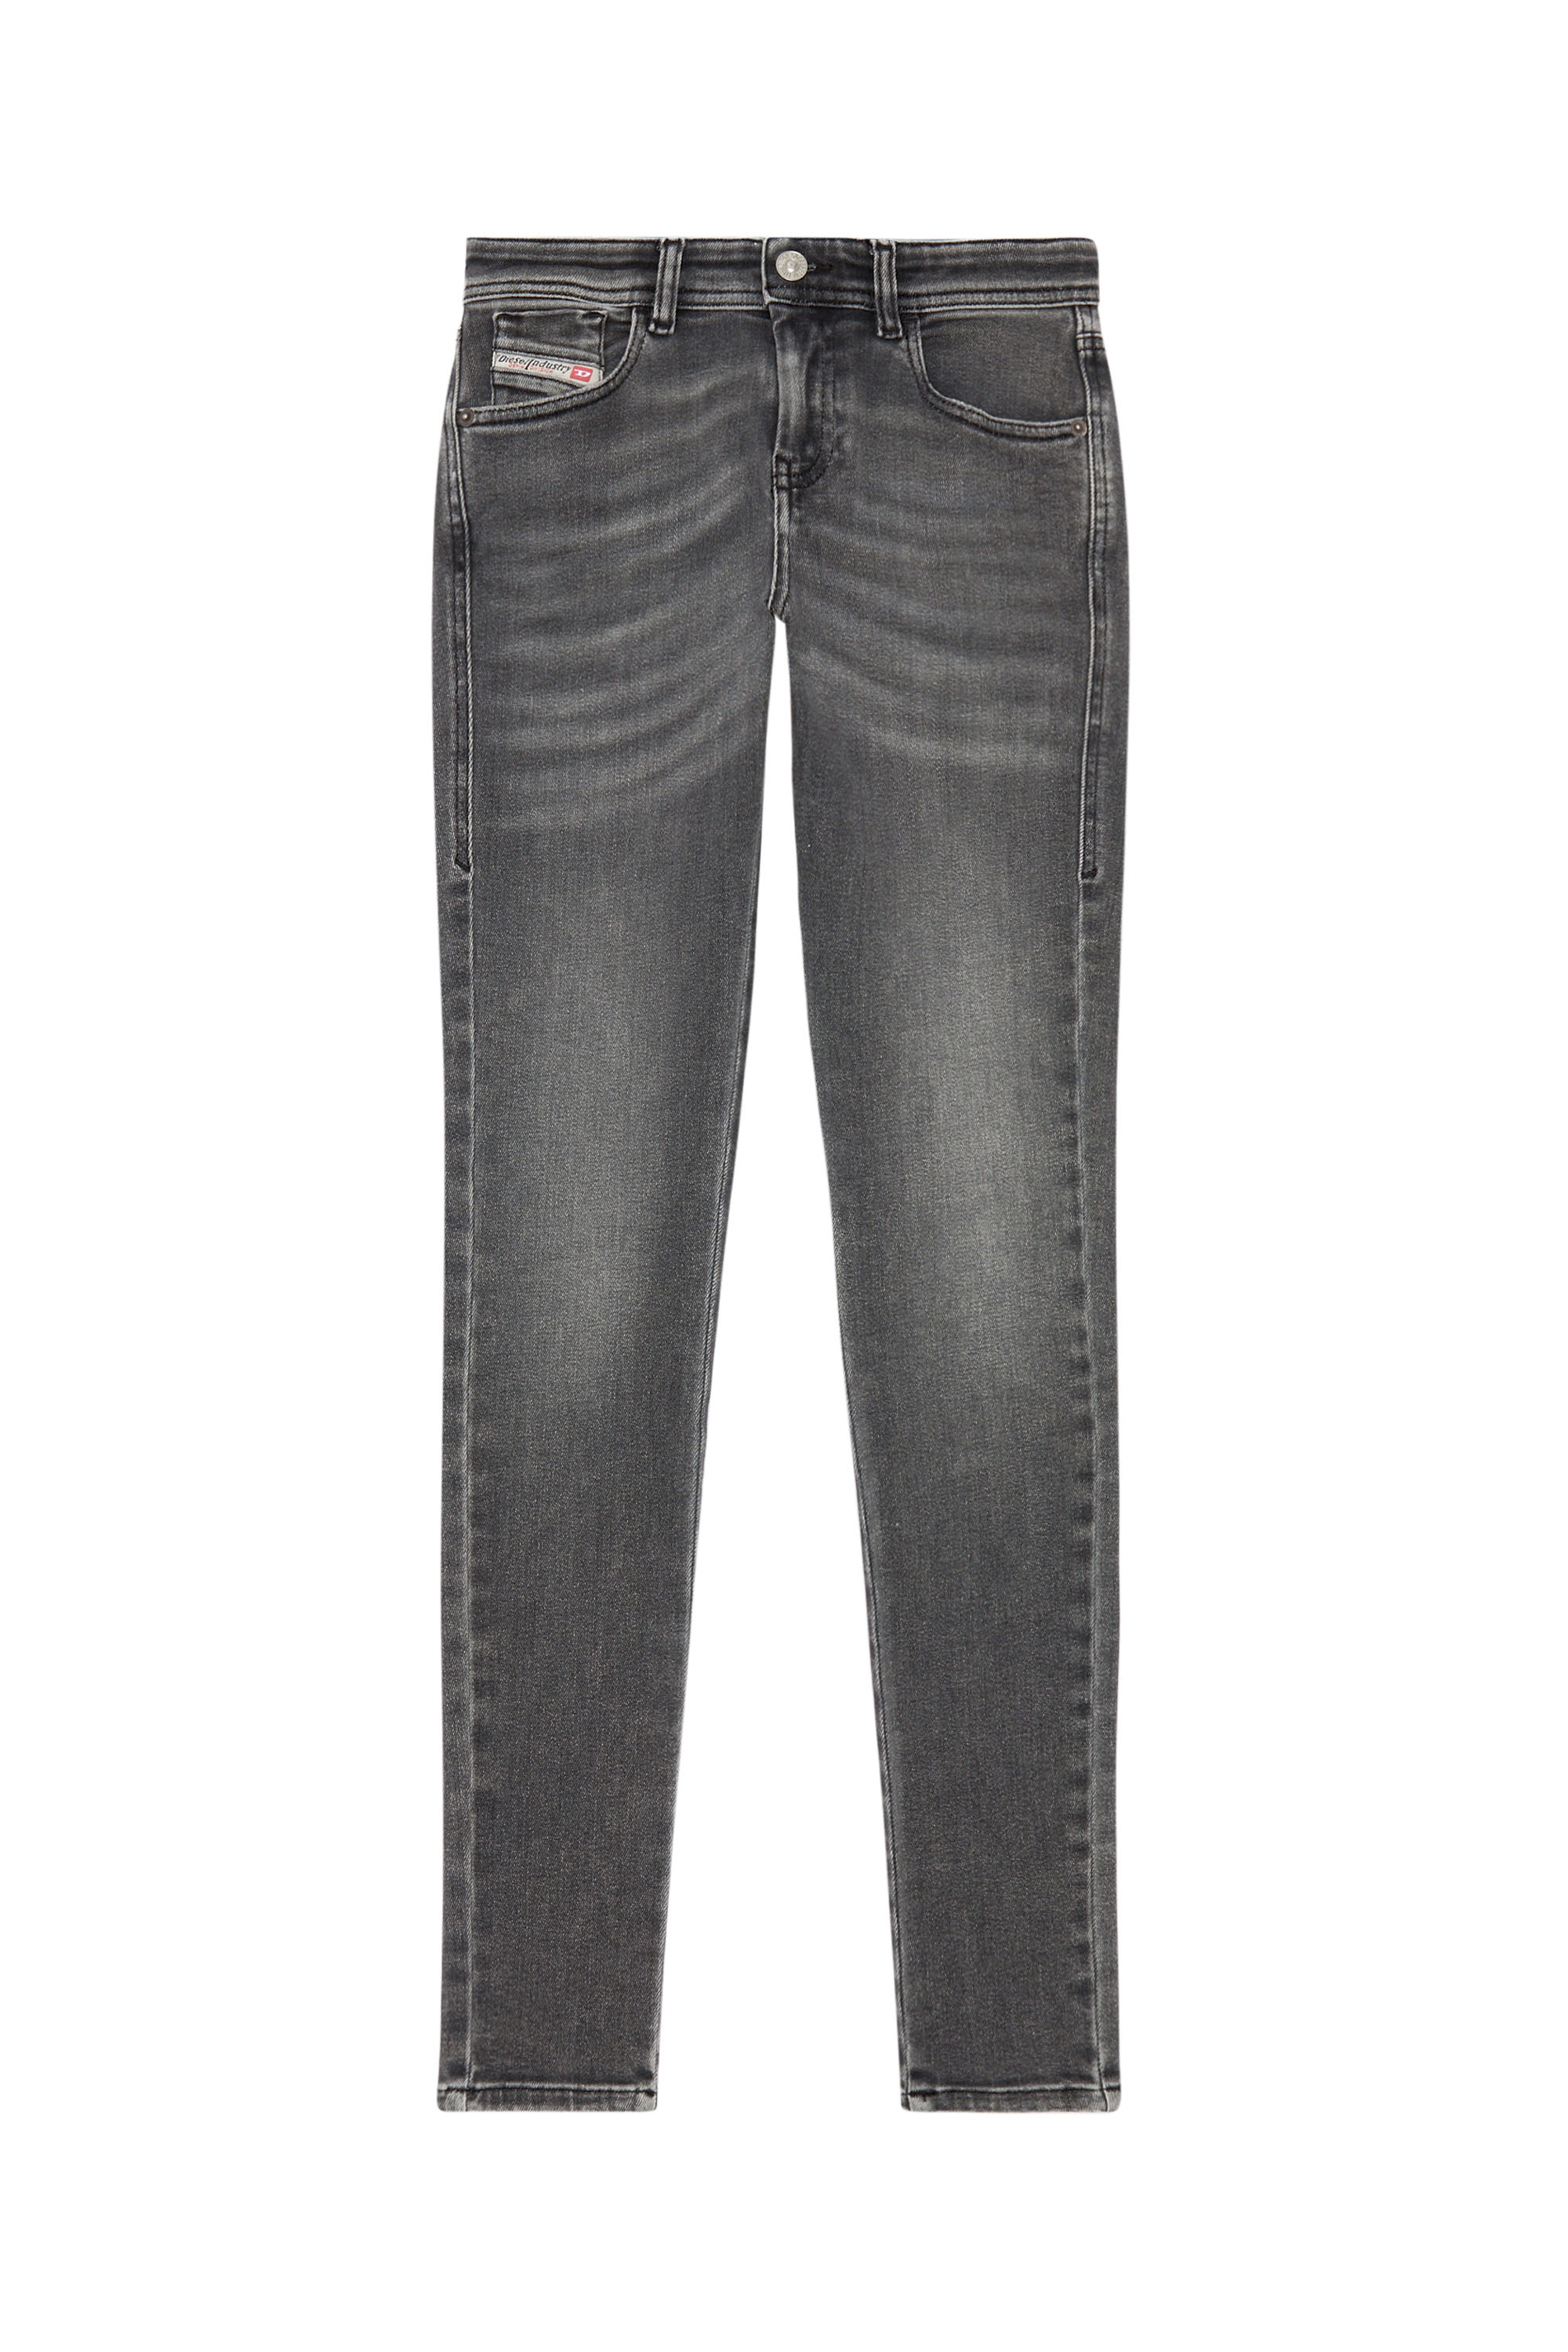 Diesel - Woman Super skinny Jeans 2017 Slandy 09H86, Black/Dark grey - Image 3